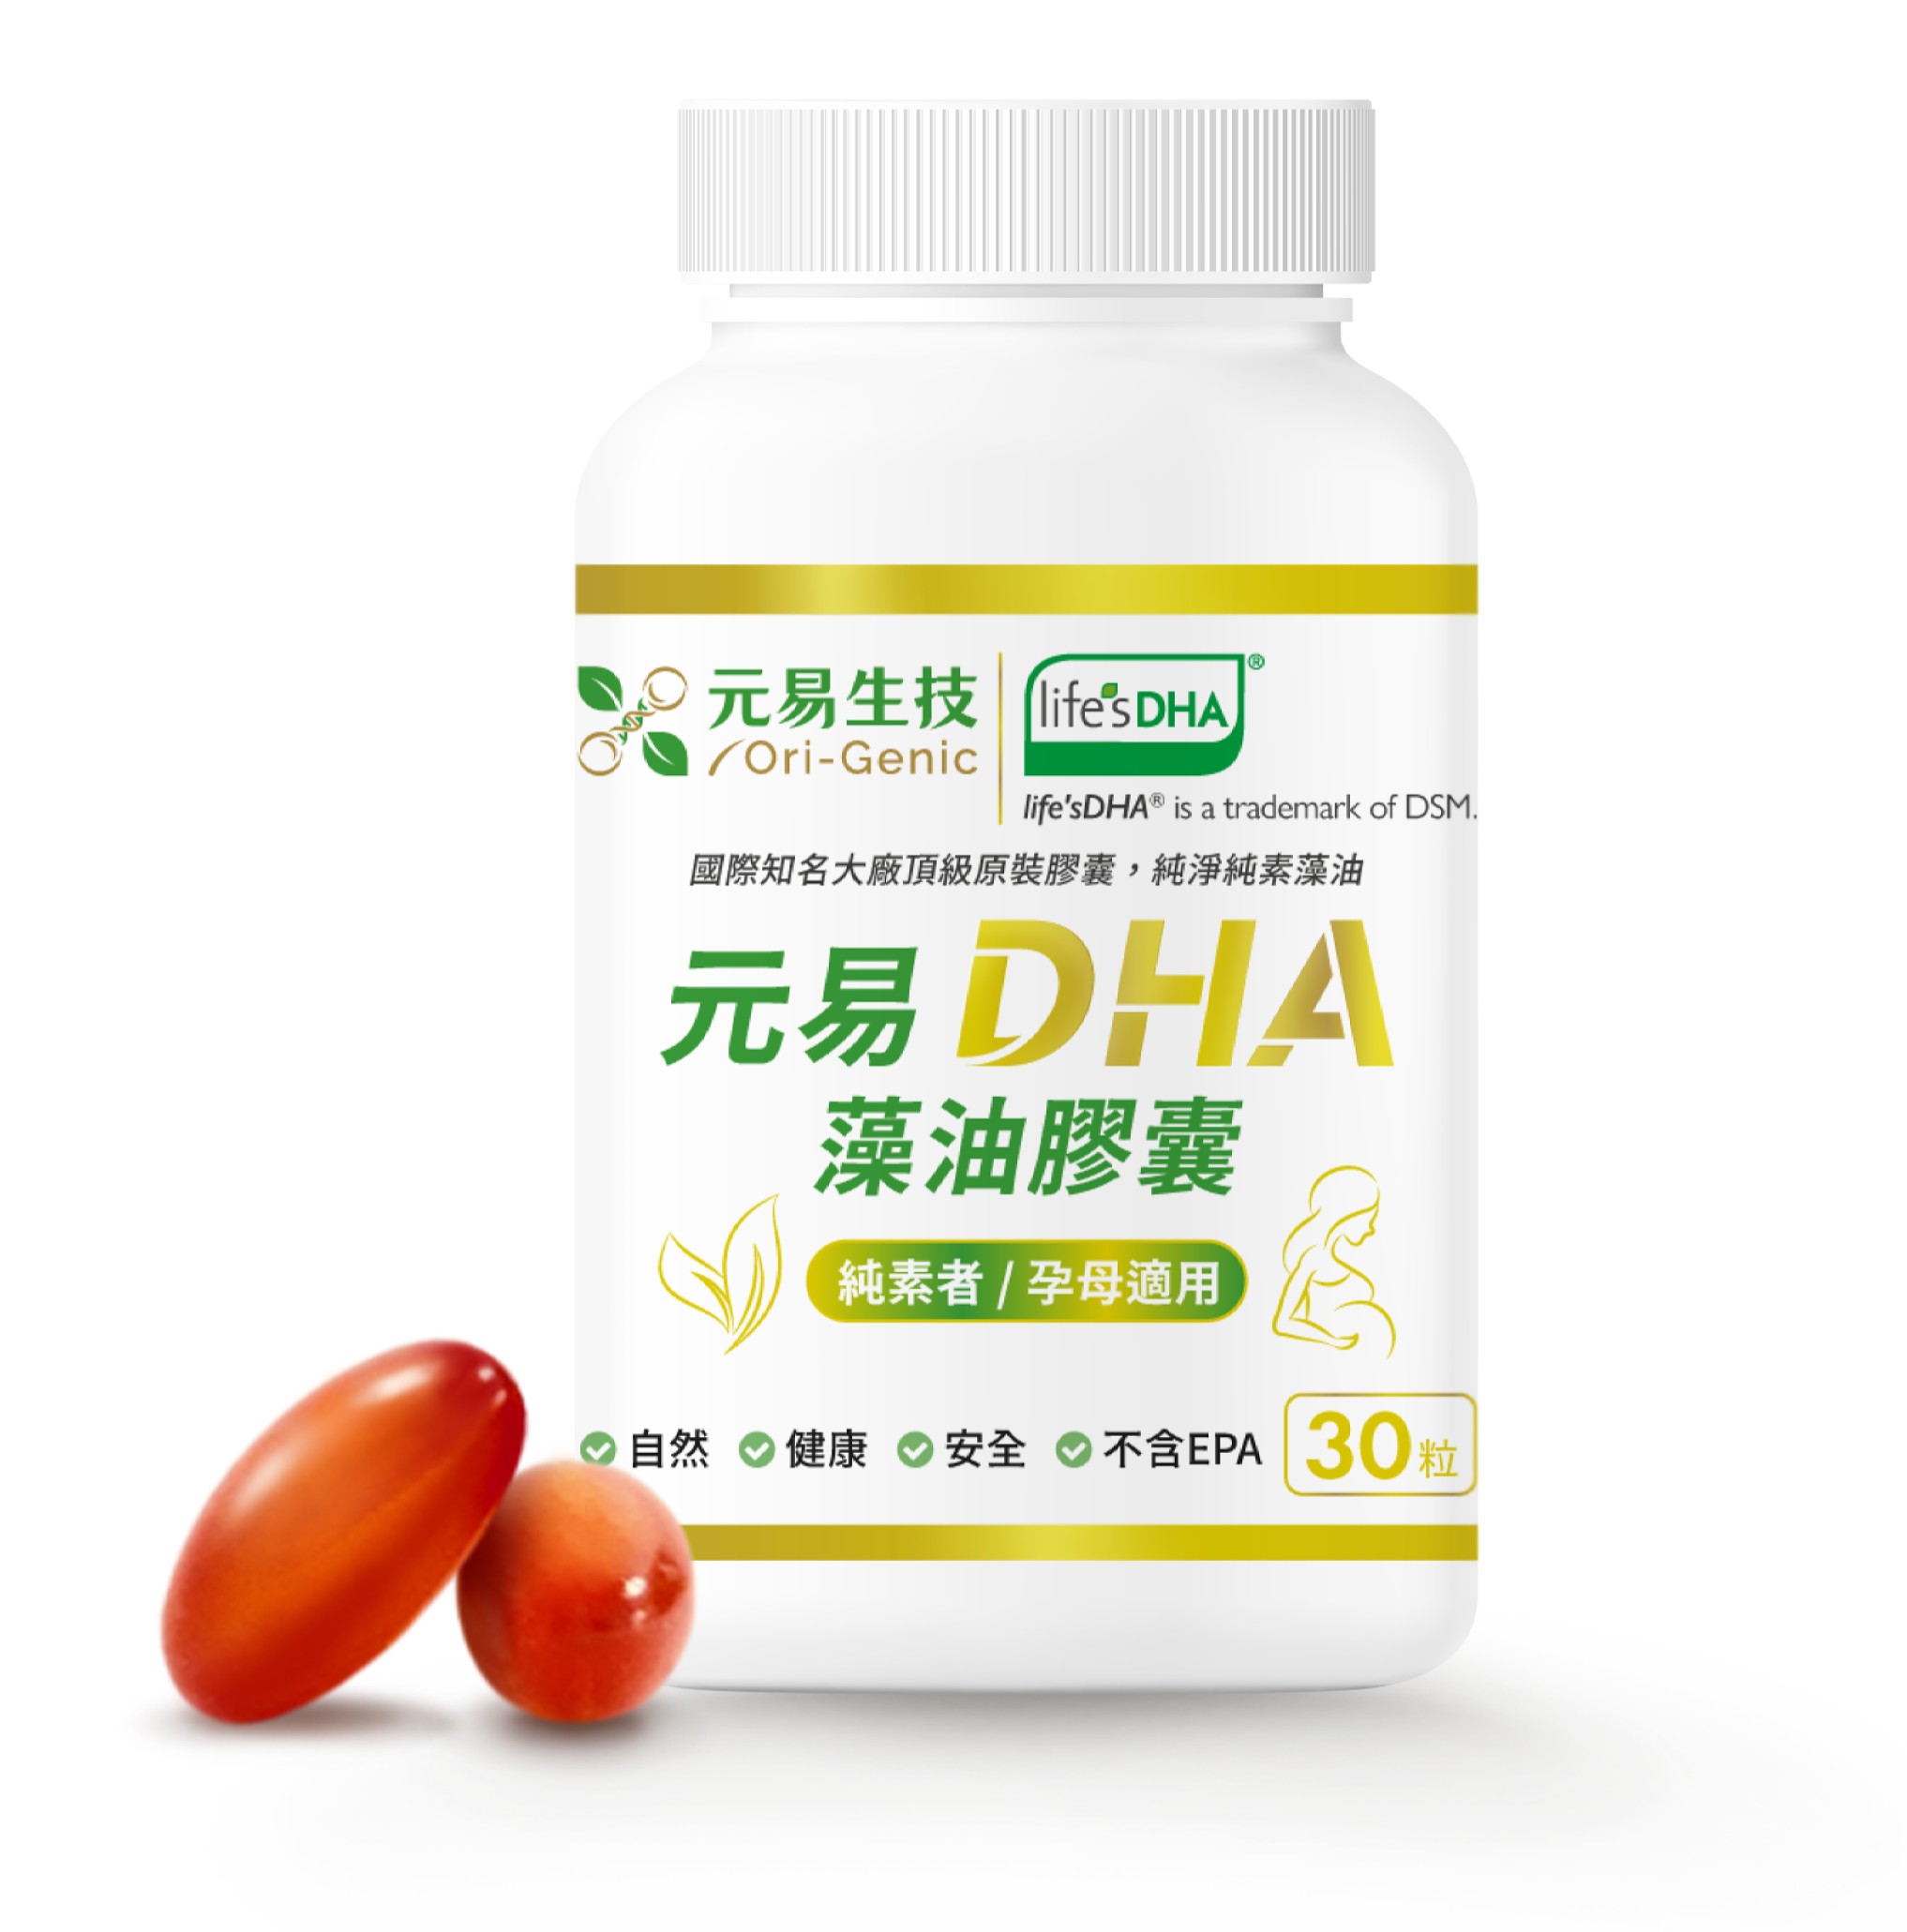 《元易》DHA藻油膠囊(30顆/瓶),,植物性全素DHA,4711264540015,《元易》DHA藻油膠囊(30顆/瓶),